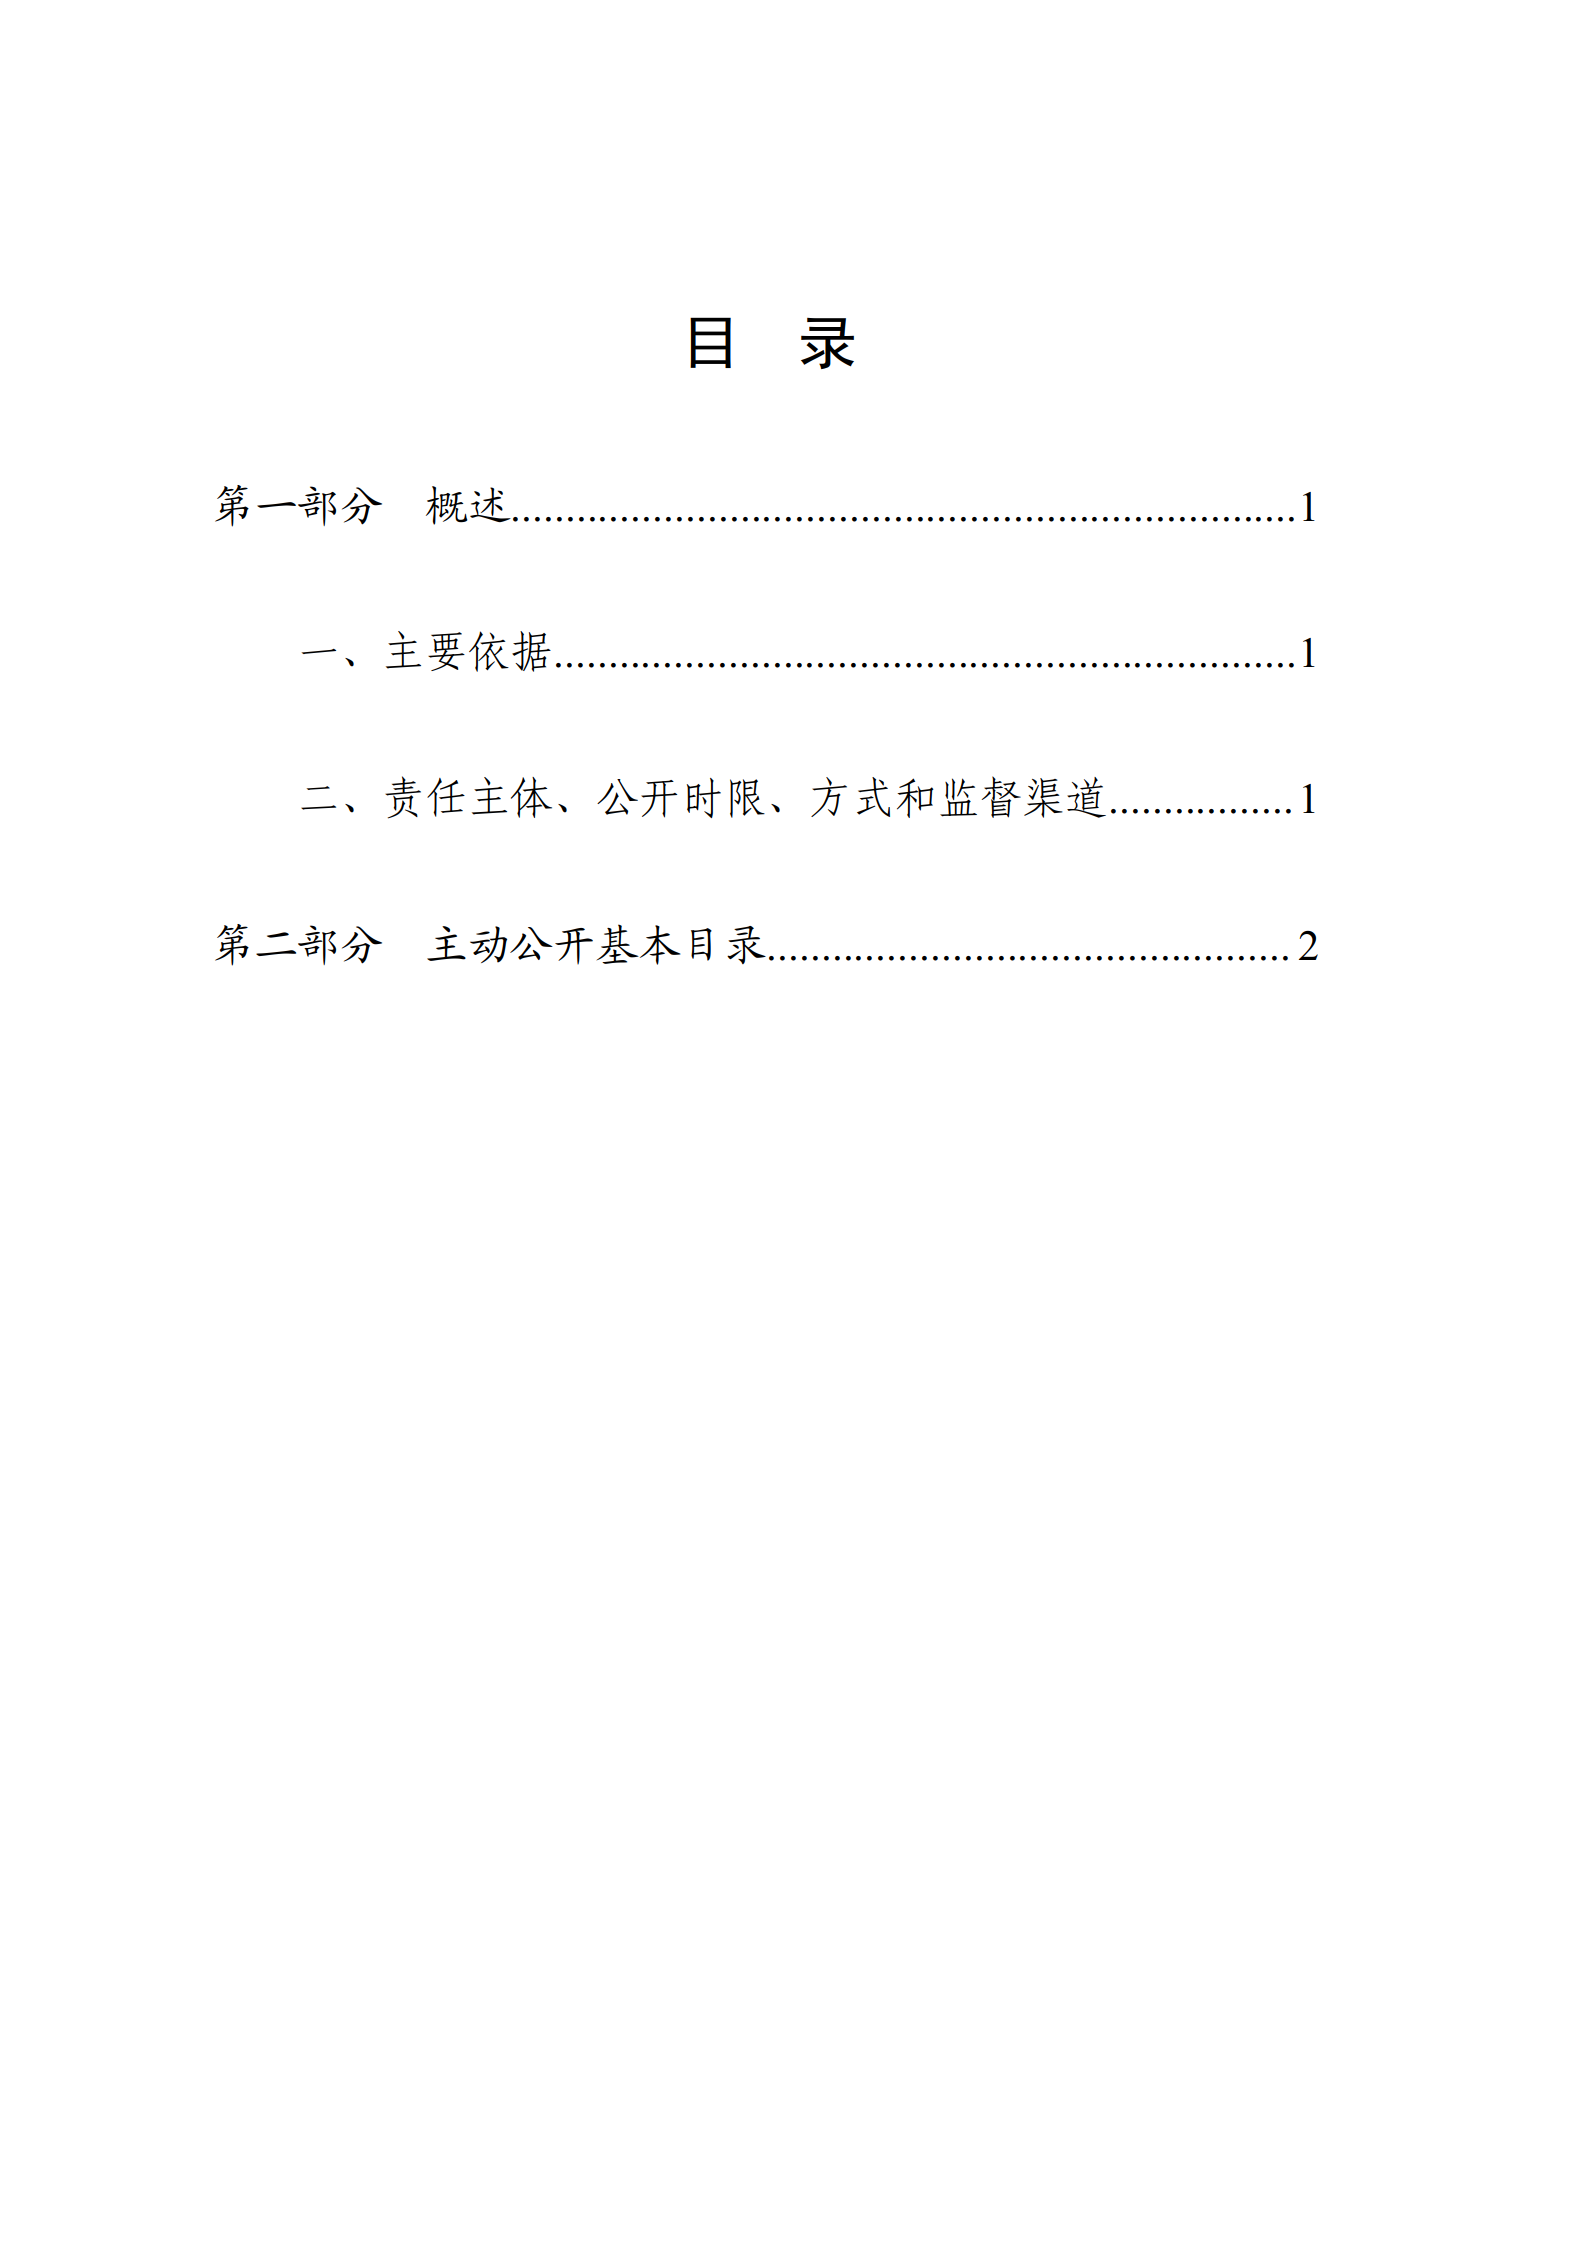 关于发布《广东省民政厅主动公开基本目录》的公告_03.png